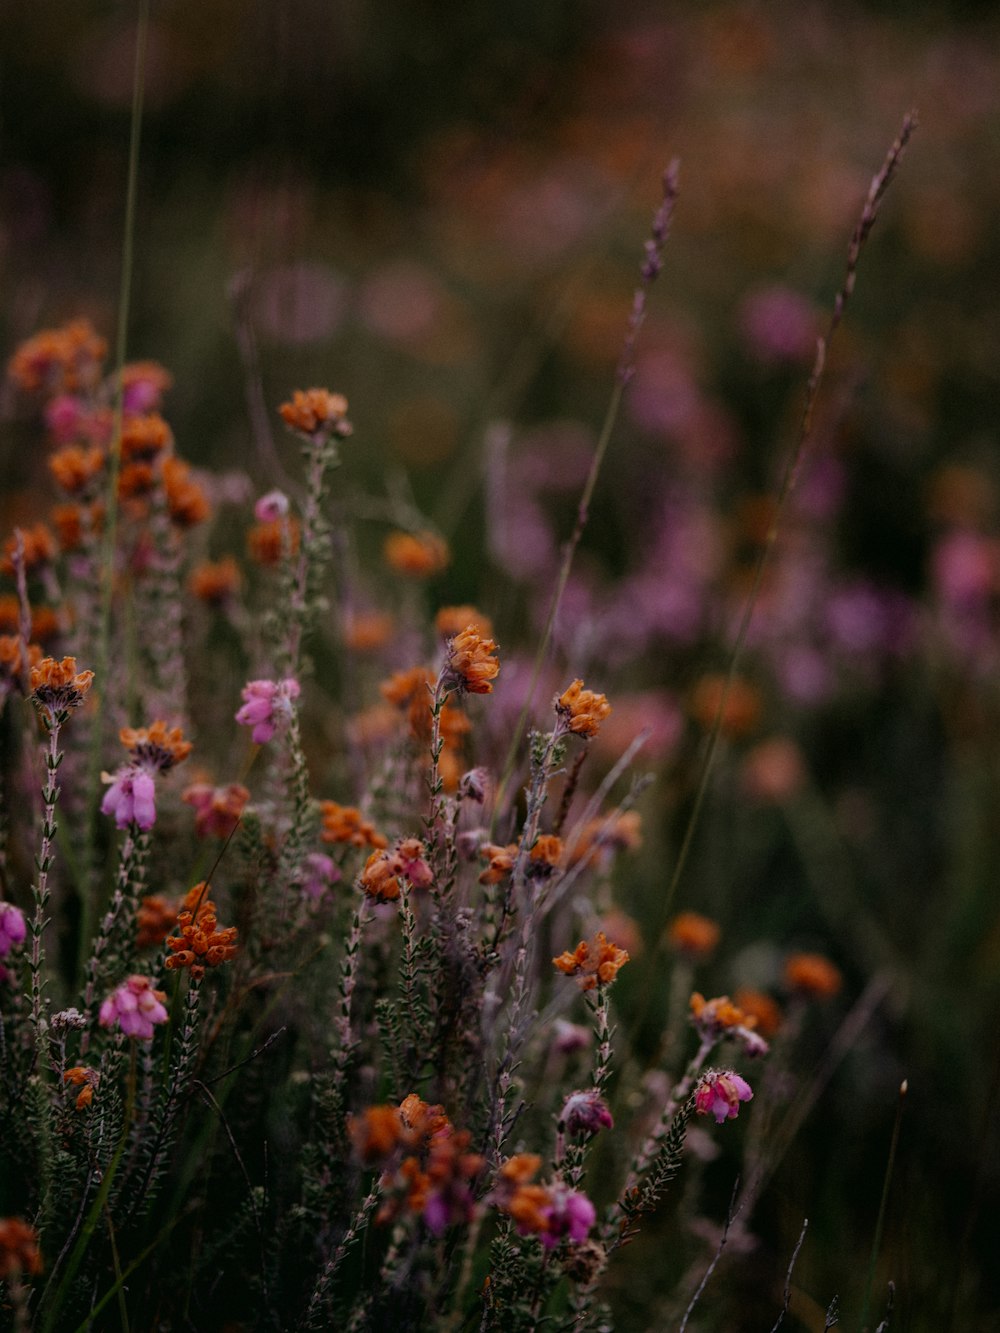 purple and orange flowers in tilt shift lens